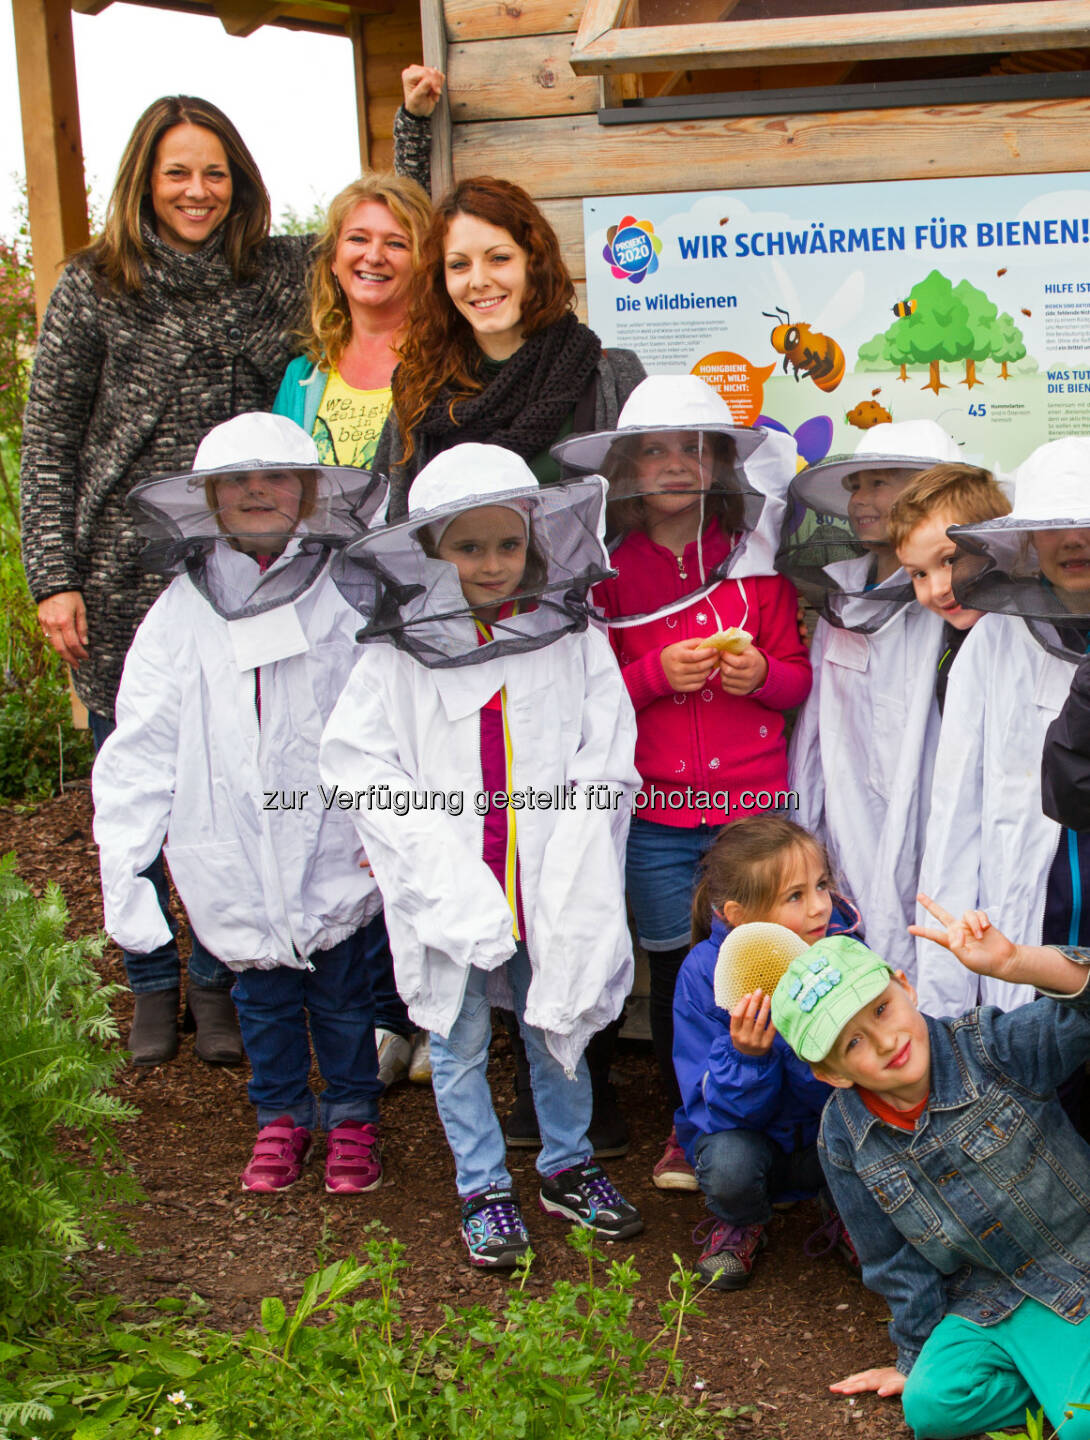 Vera Russwurm und die Volksschule Sattledt zu Gast im Hofer-Bienenhotel : „Mit dem Bienenschutz kann man nicht früh genug beginnen“ : Fotocredit: Hofer